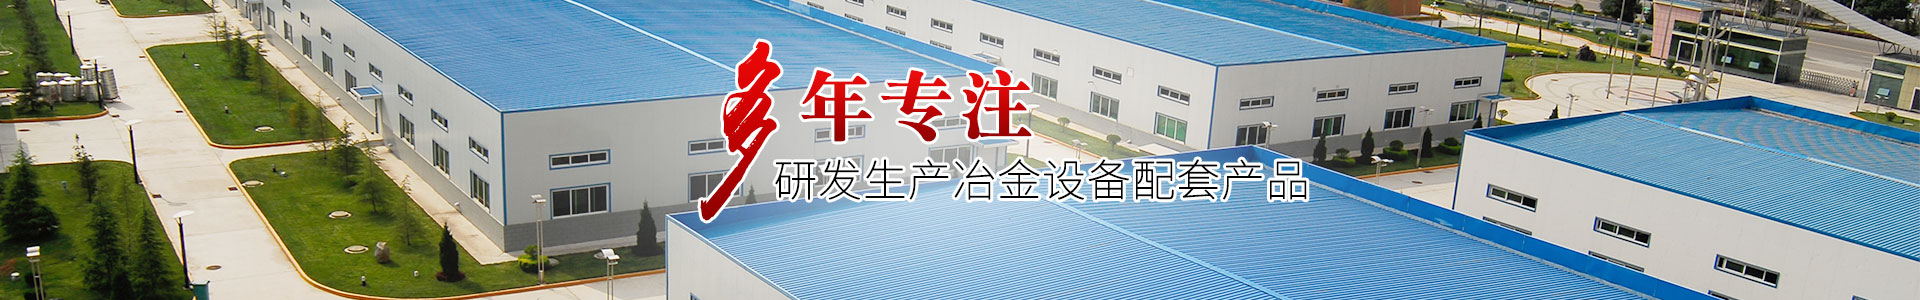 江苏六申冶金装备科技有限公司